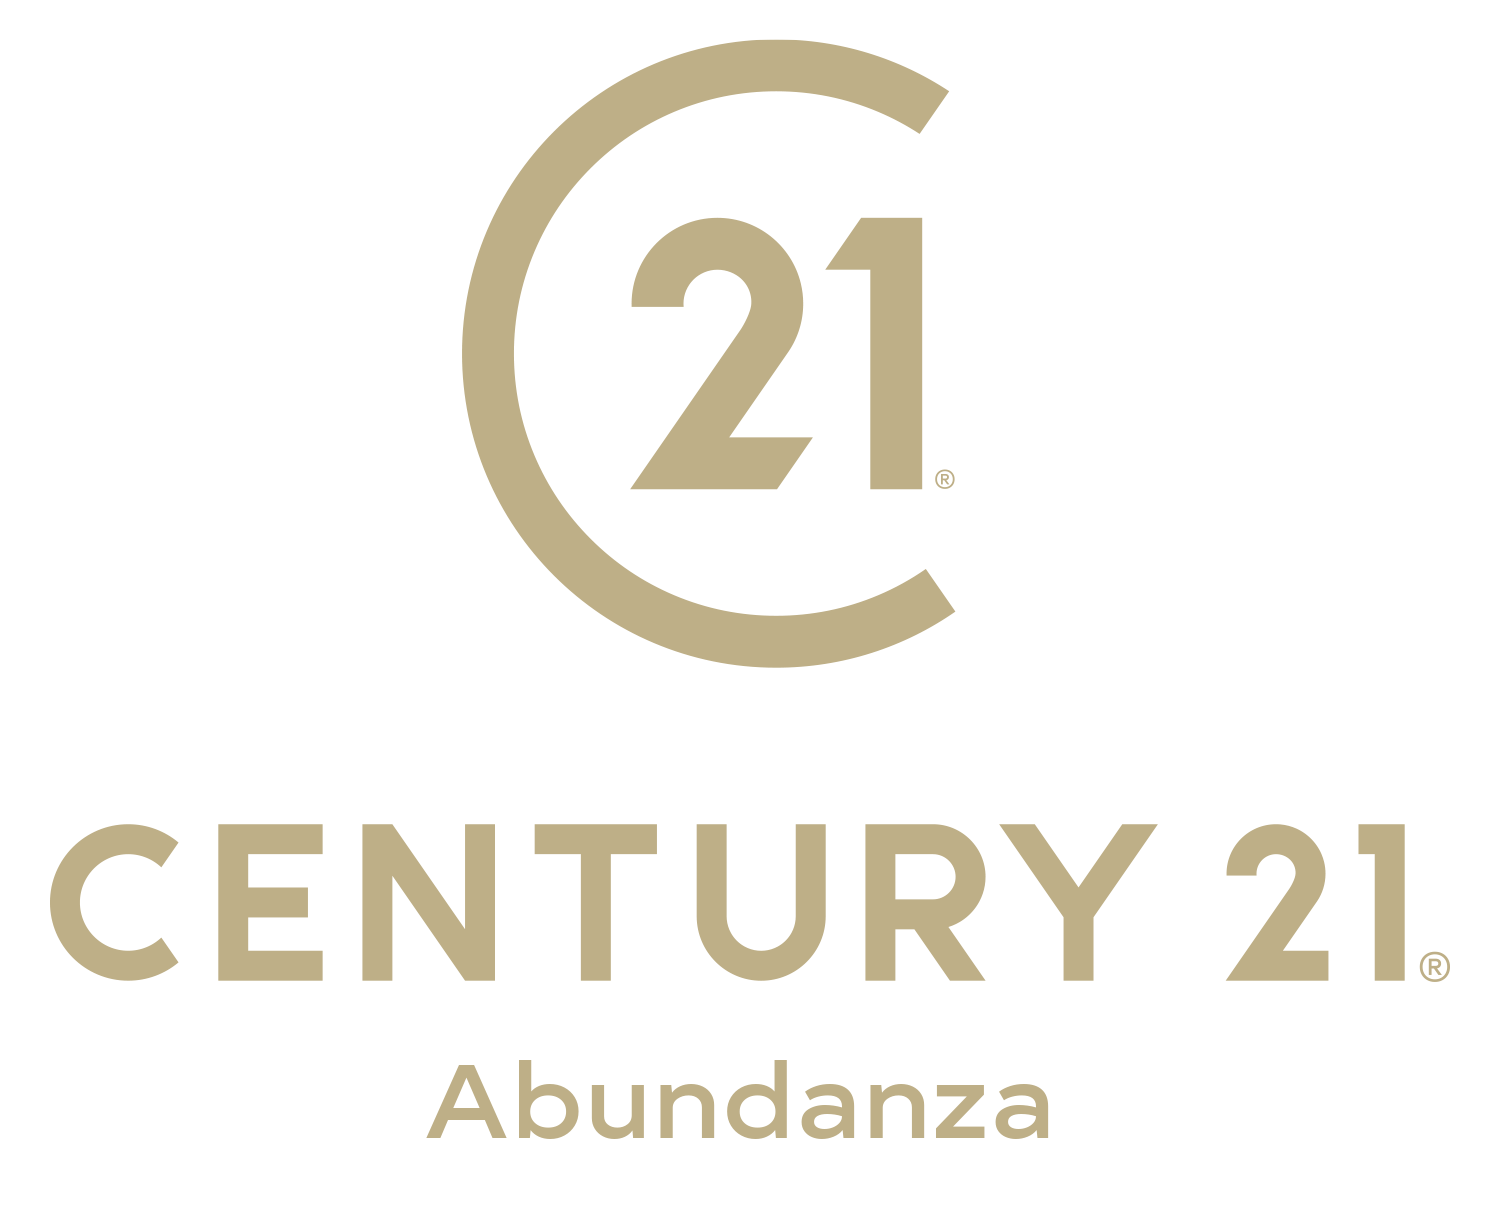 Century 21 Abundanza